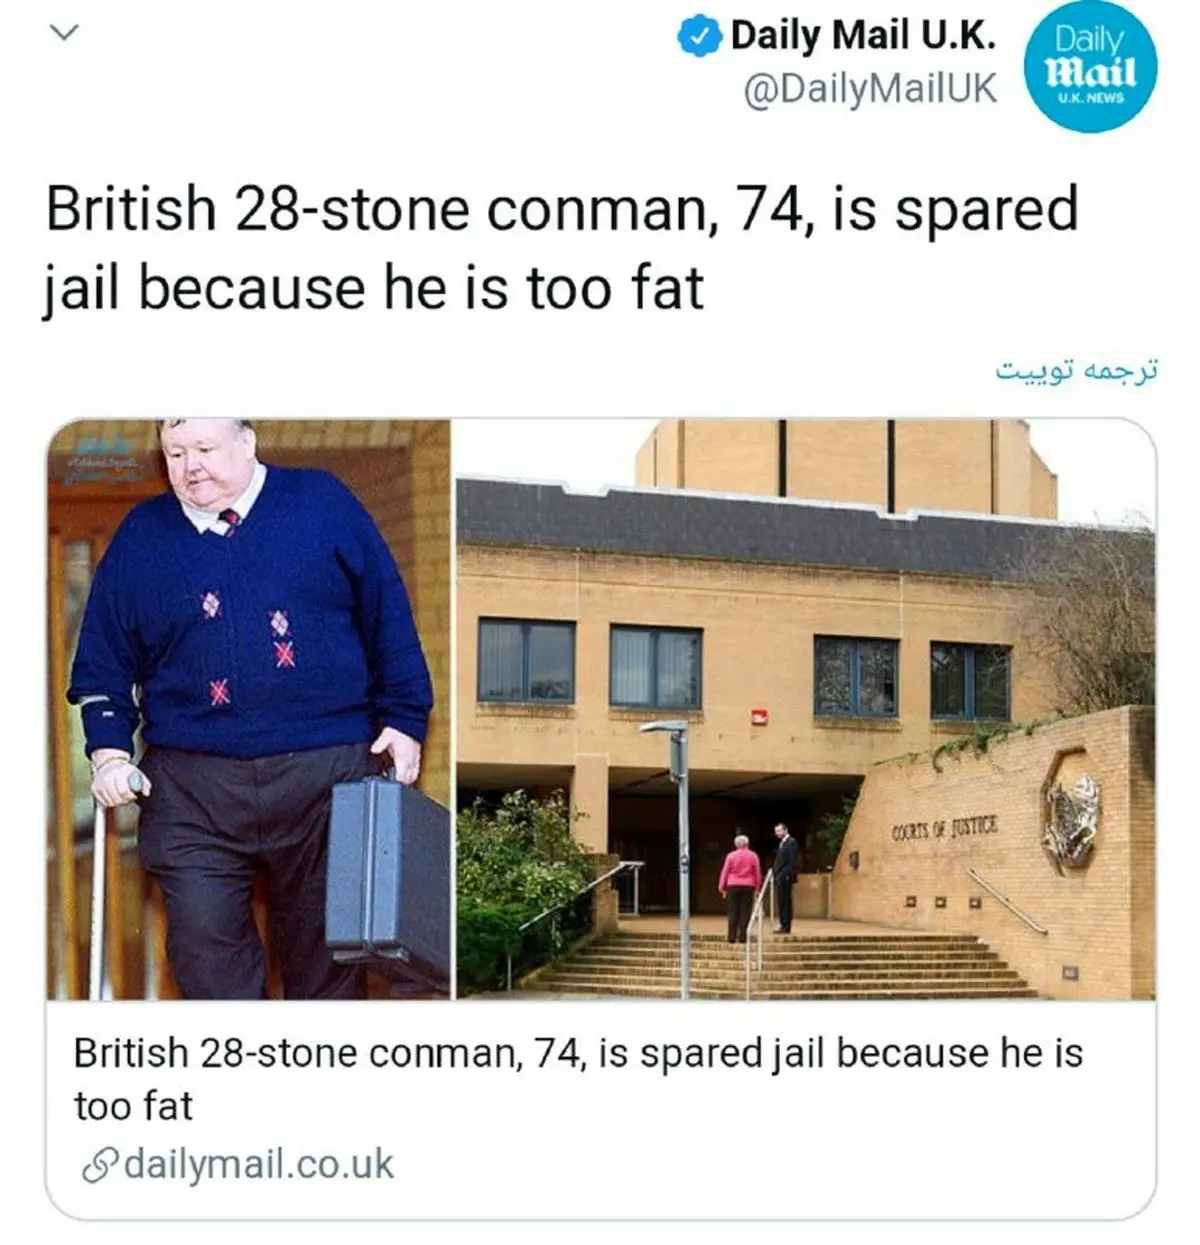  آزادی عجیب یک زندانی به خاطر چاقی زیاد!